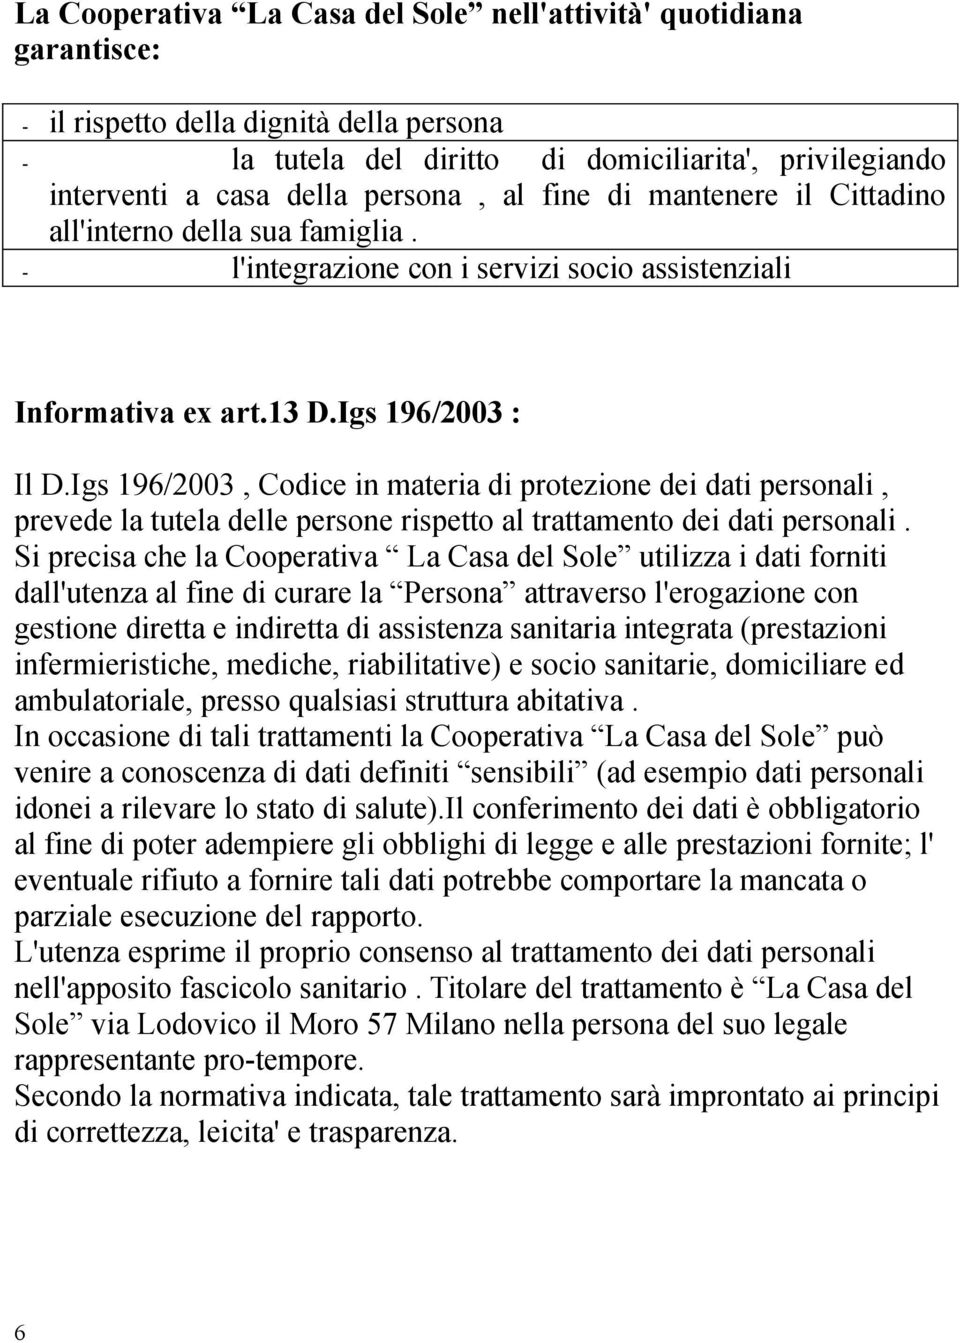 Igs 196/2003, Codice in materia di protezione dei dati personali, prevede la tutela delle persone rispetto al trattamento dei dati personali.